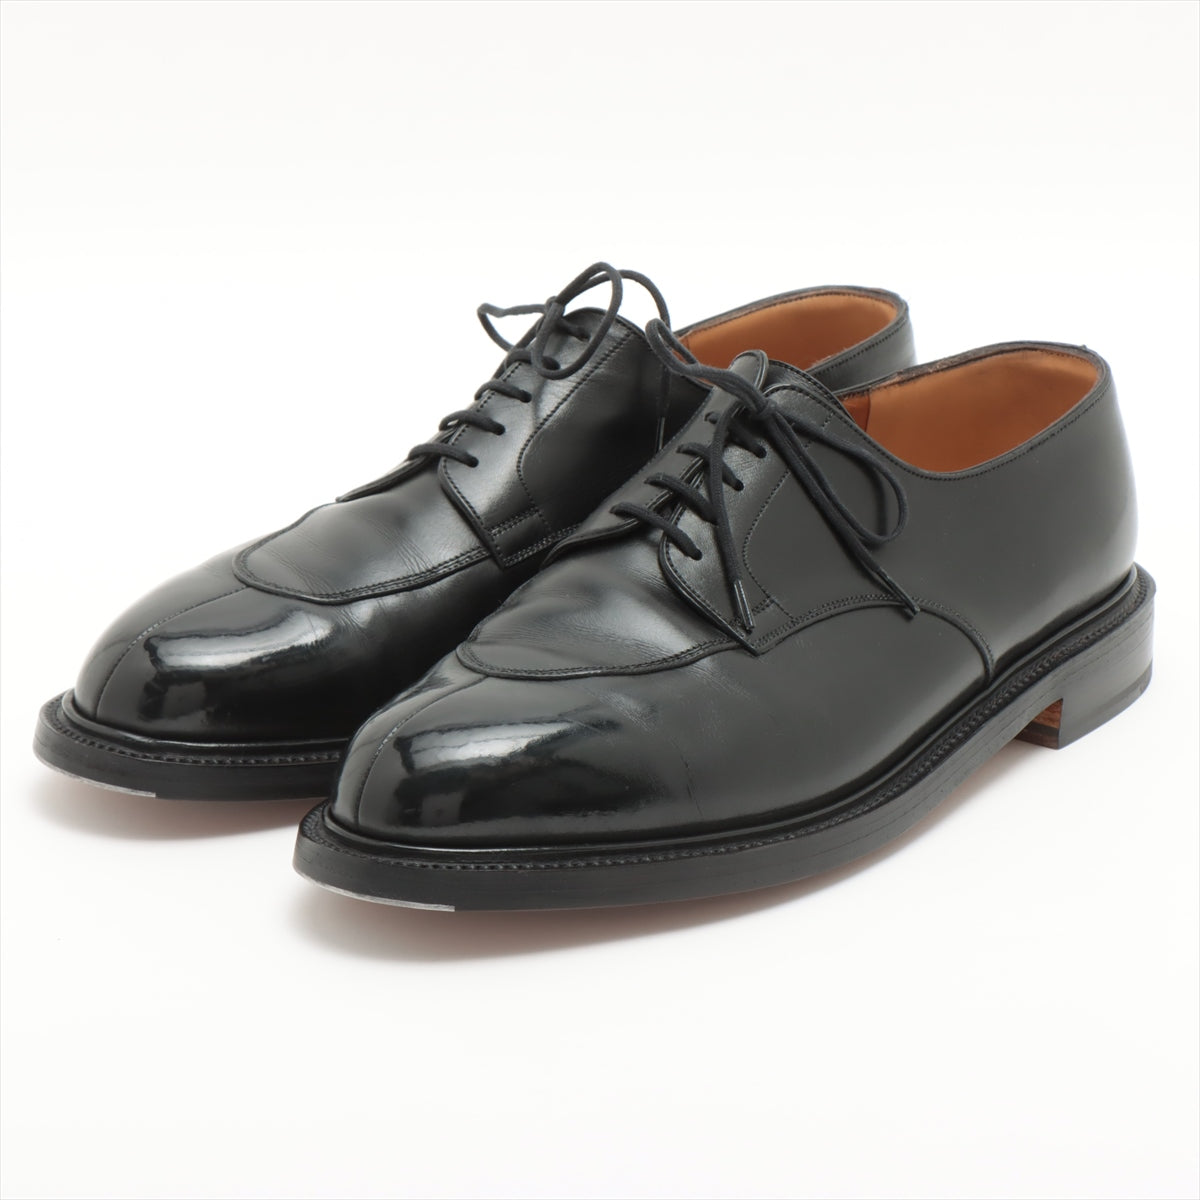 J. M. Weston Leather Dress shoes 10 1/2E Men's Black Spilit Toe Classic Derby